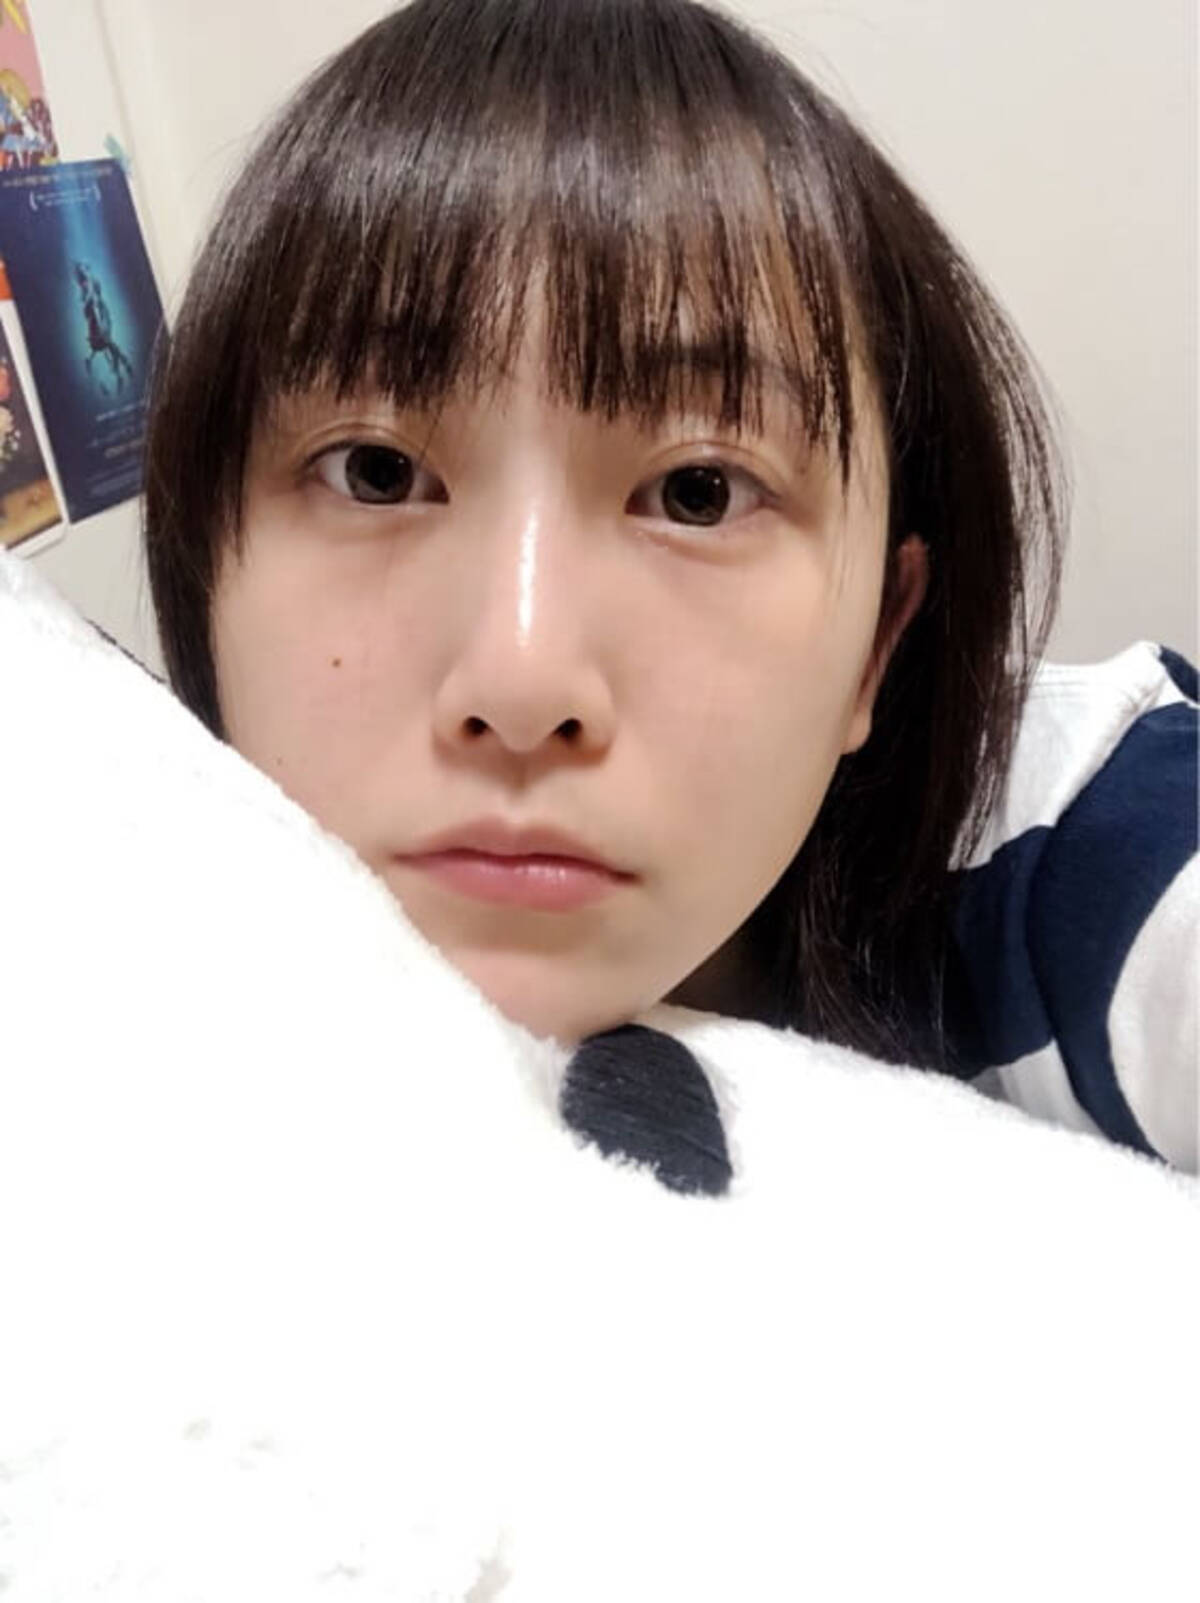 かわいすぎるぞ 松井玲奈 寝る直前のすっぴん写真にファン悶絶 18年5月23日 エキサイトニュース